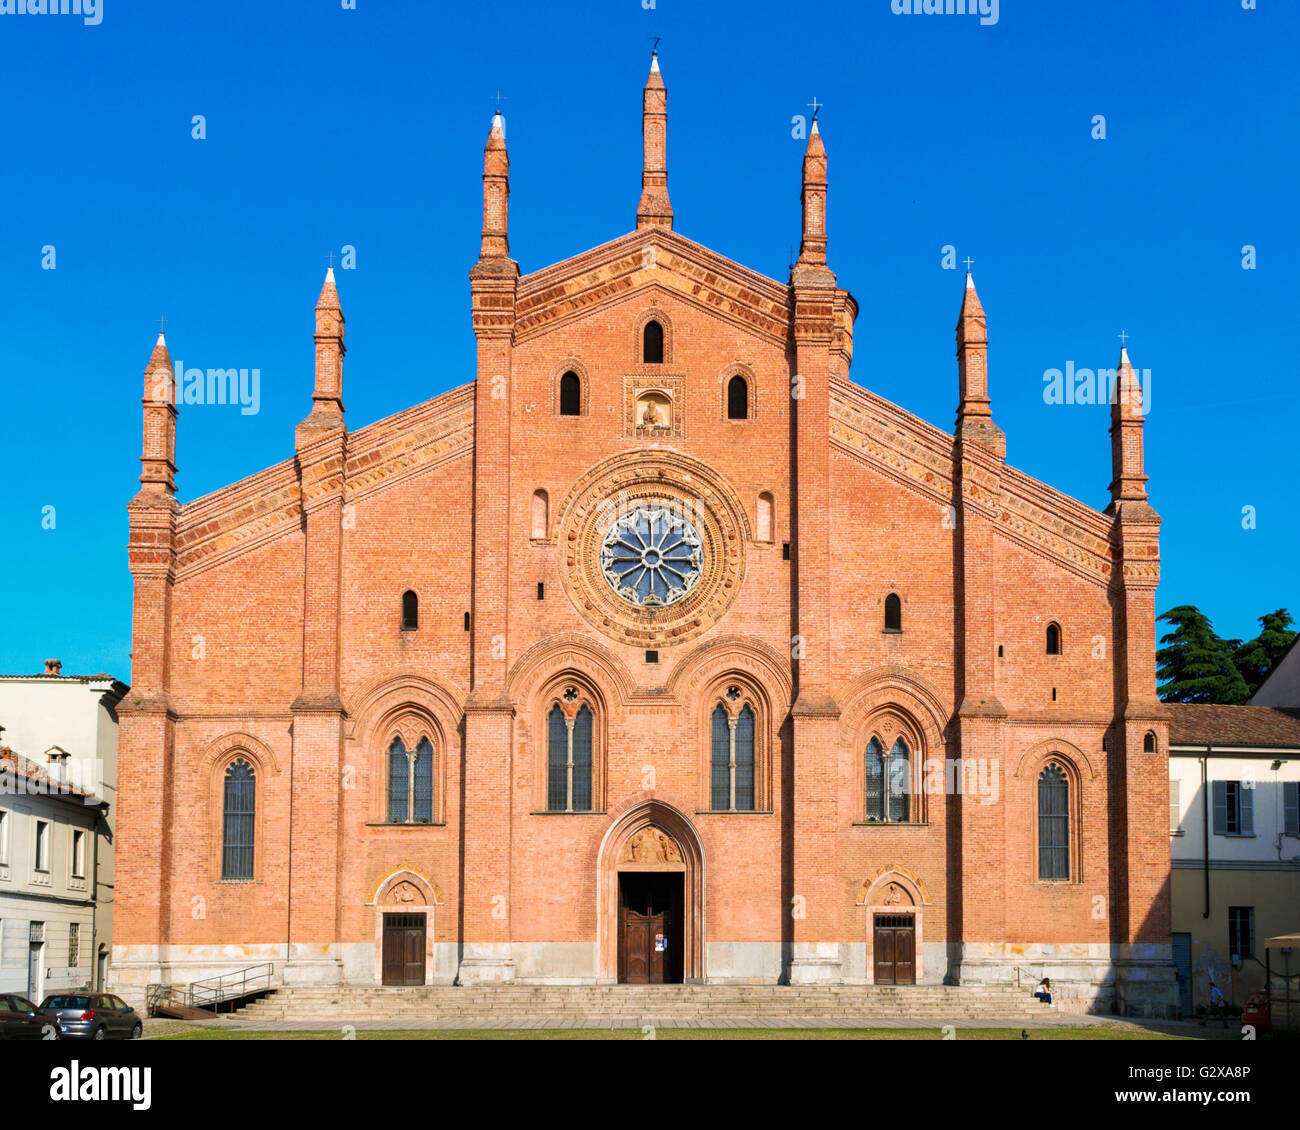 The church of 'Santa Maria del Carmine' in Pavia Stock Photo